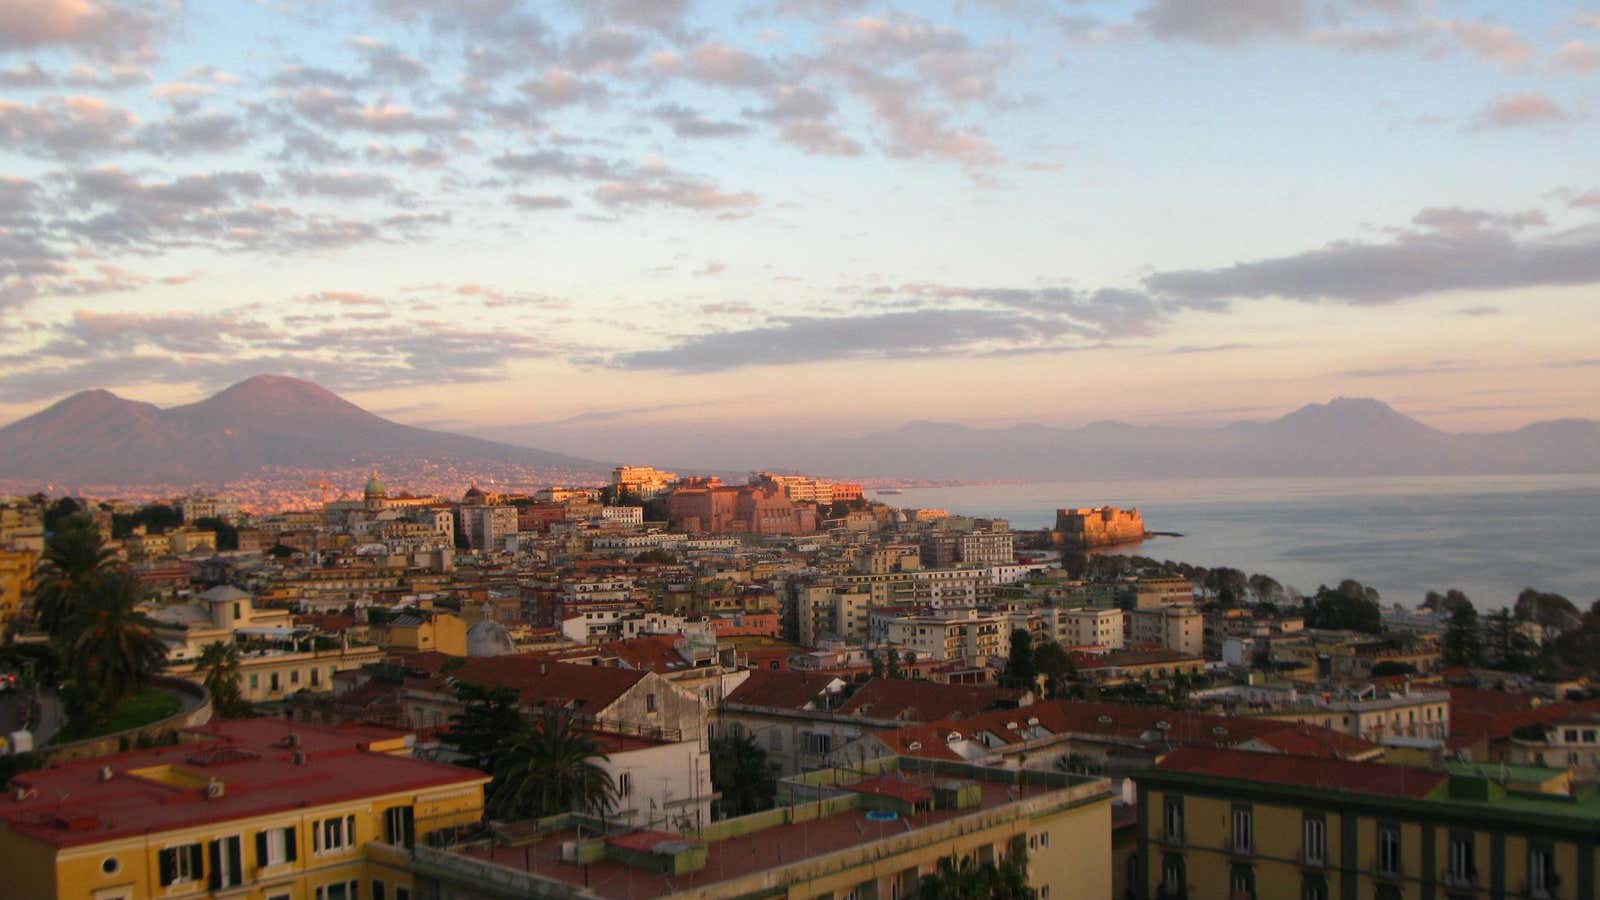 Naples, the setting for Ferrante’s novels.